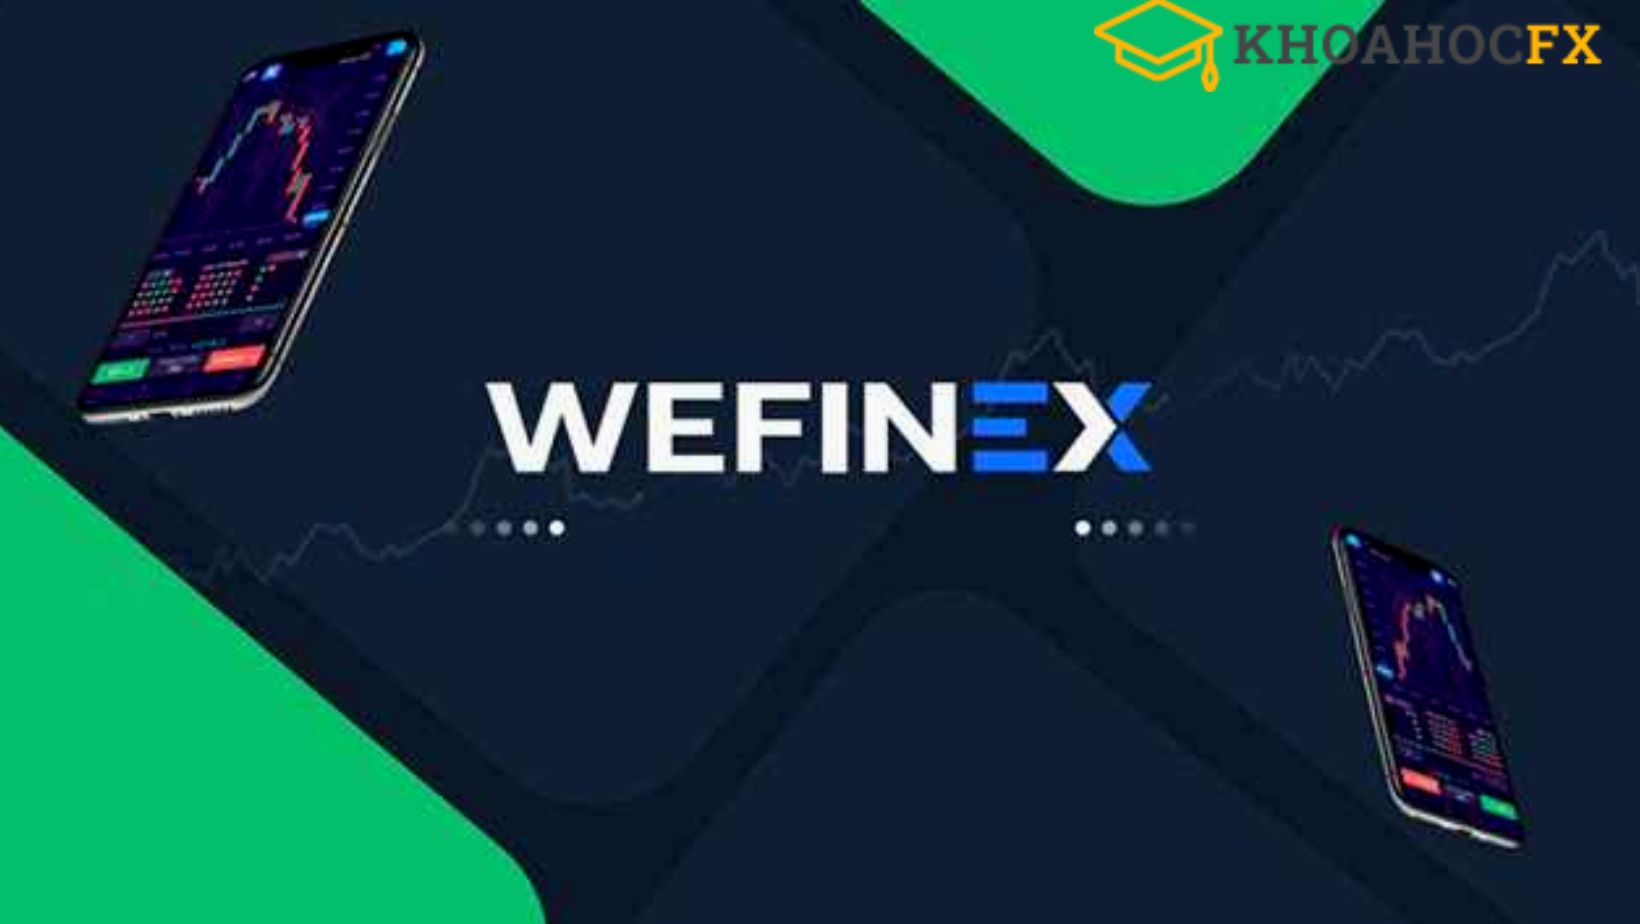 Wefinex là gì